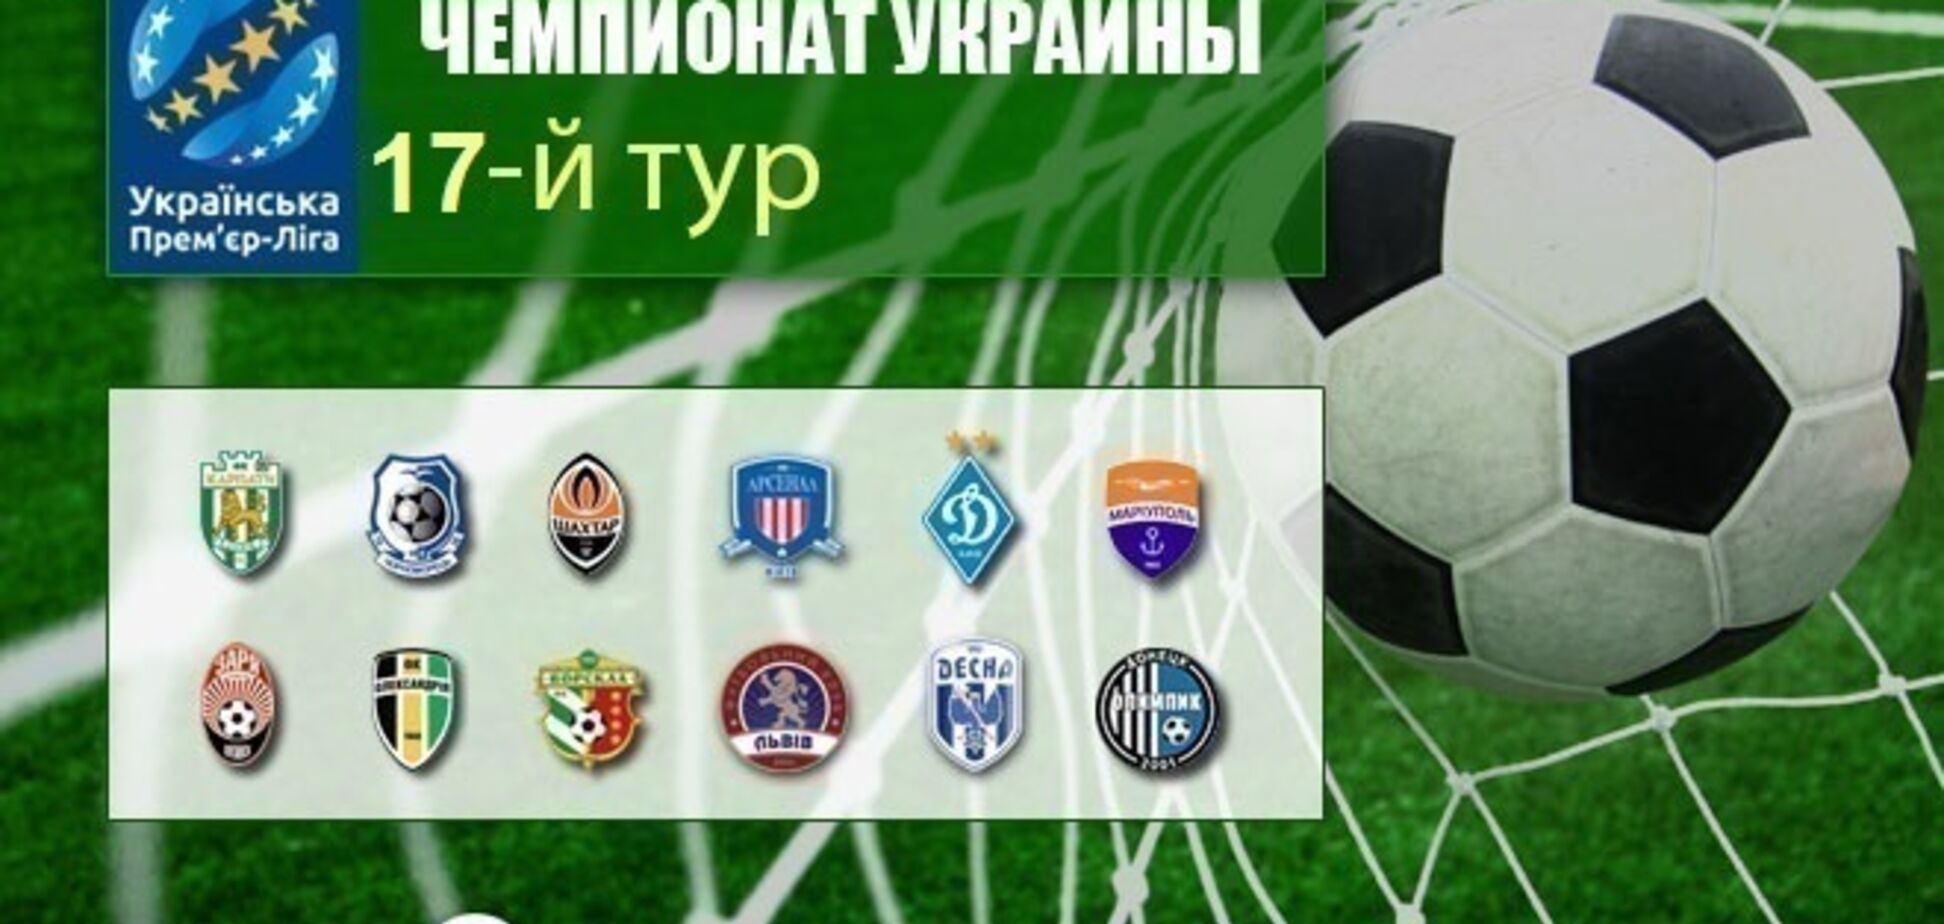 17-й тур чемпіонату України з футболу: результати та огляди